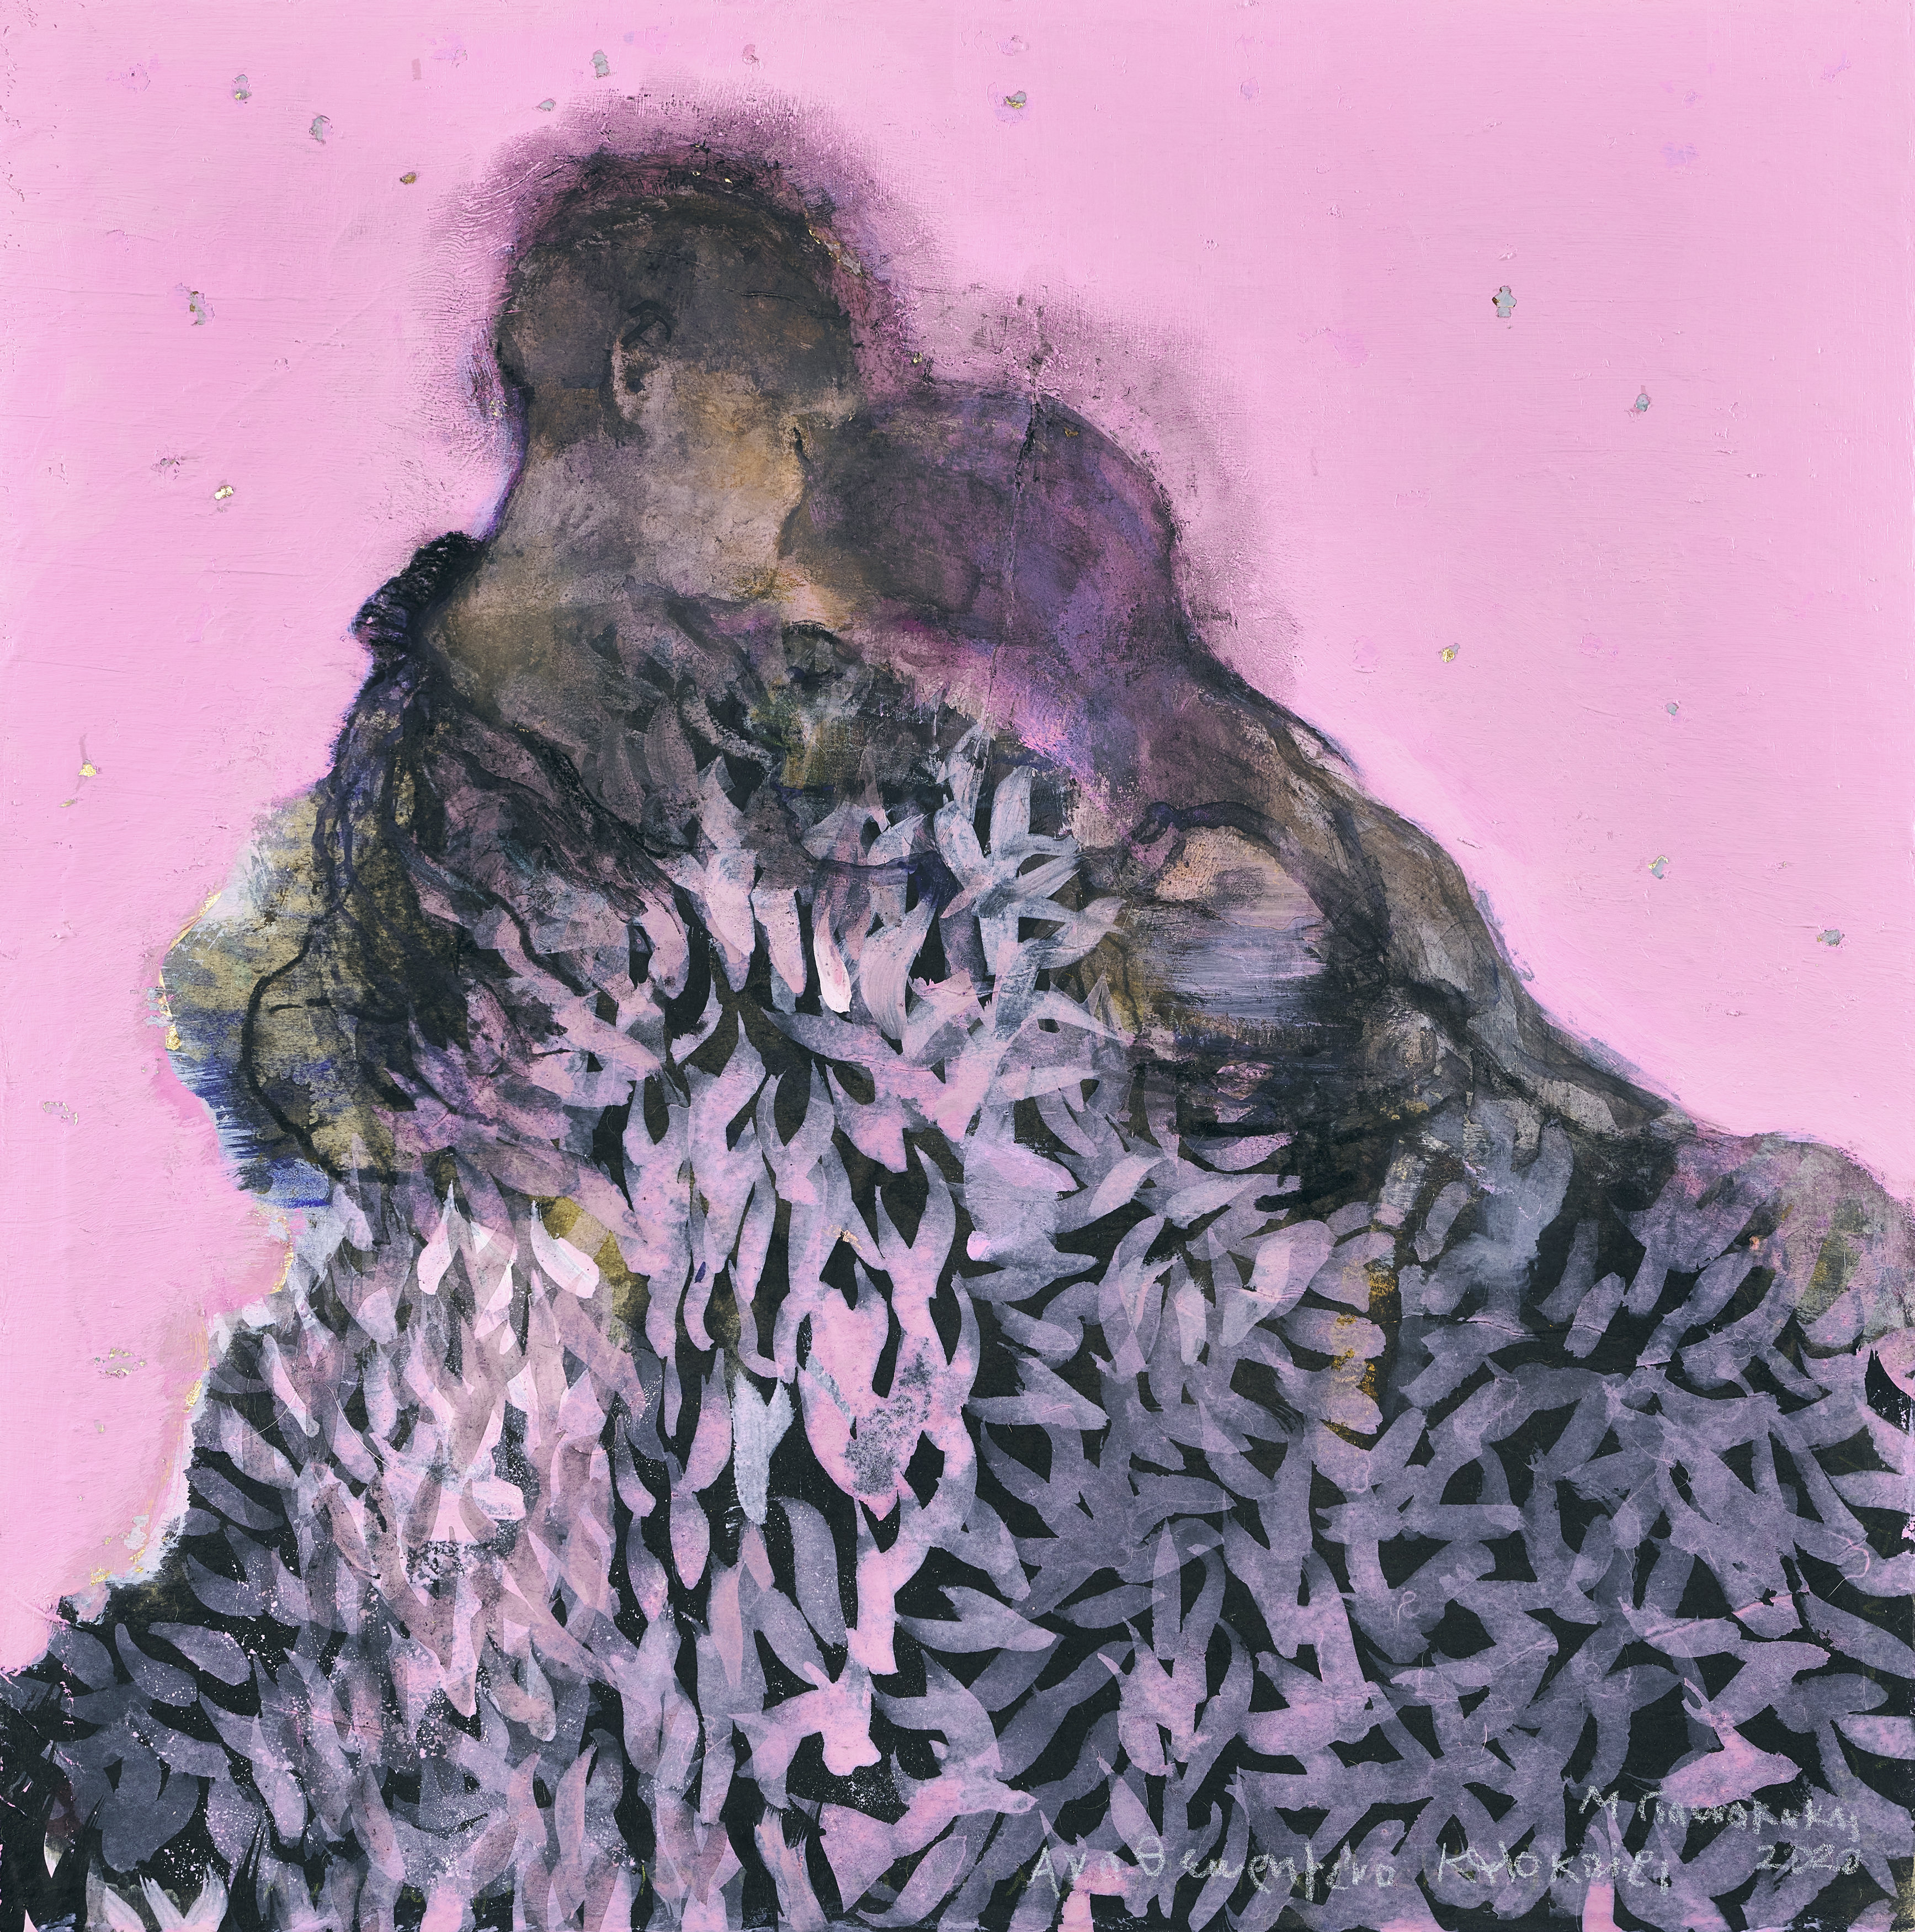 Πίνακας της Μαρίας Γιαννακάκη από την έκθεση «Ανοιξη τον Χειμώνα»